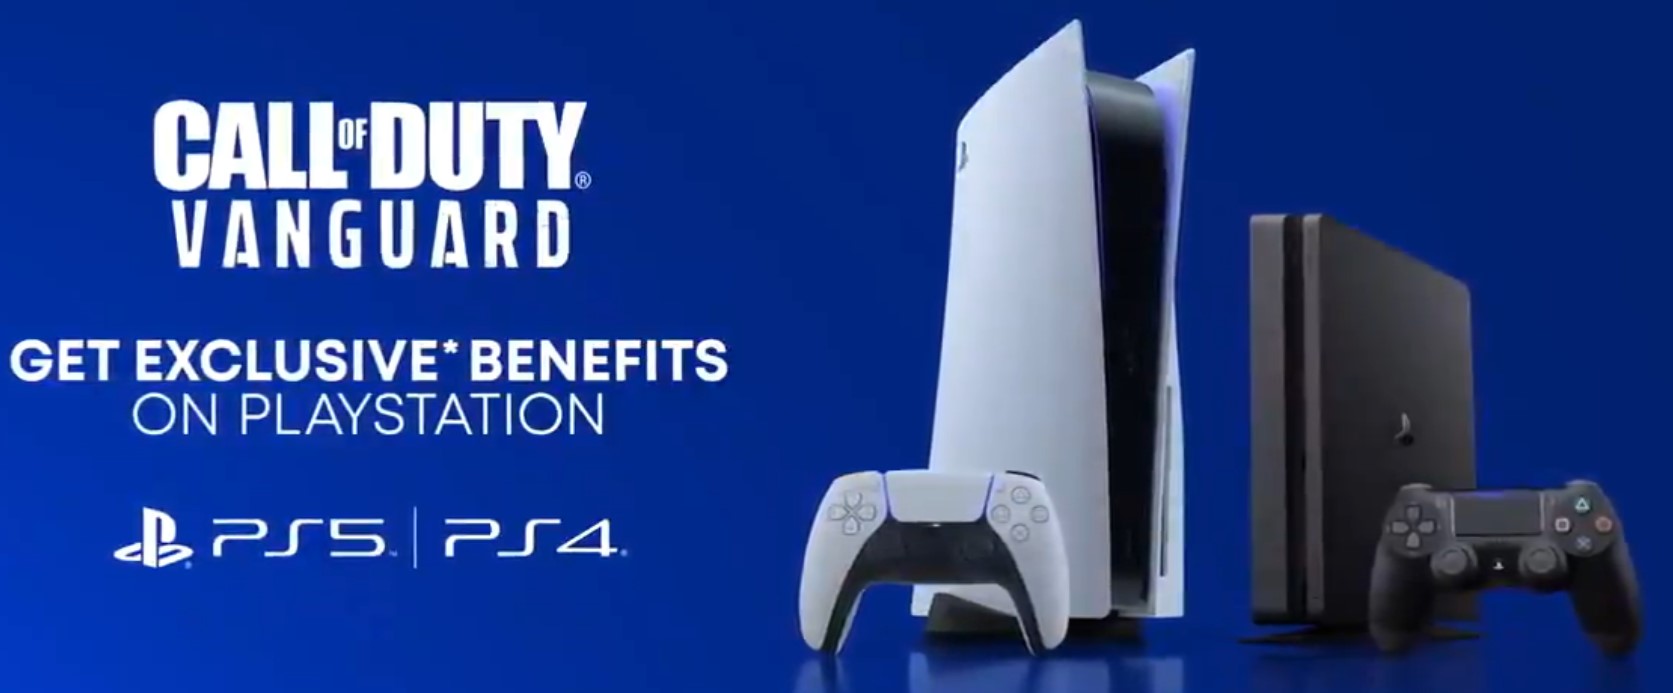 COD Vanguard PlayStation Exclusive Benefits Confirmed